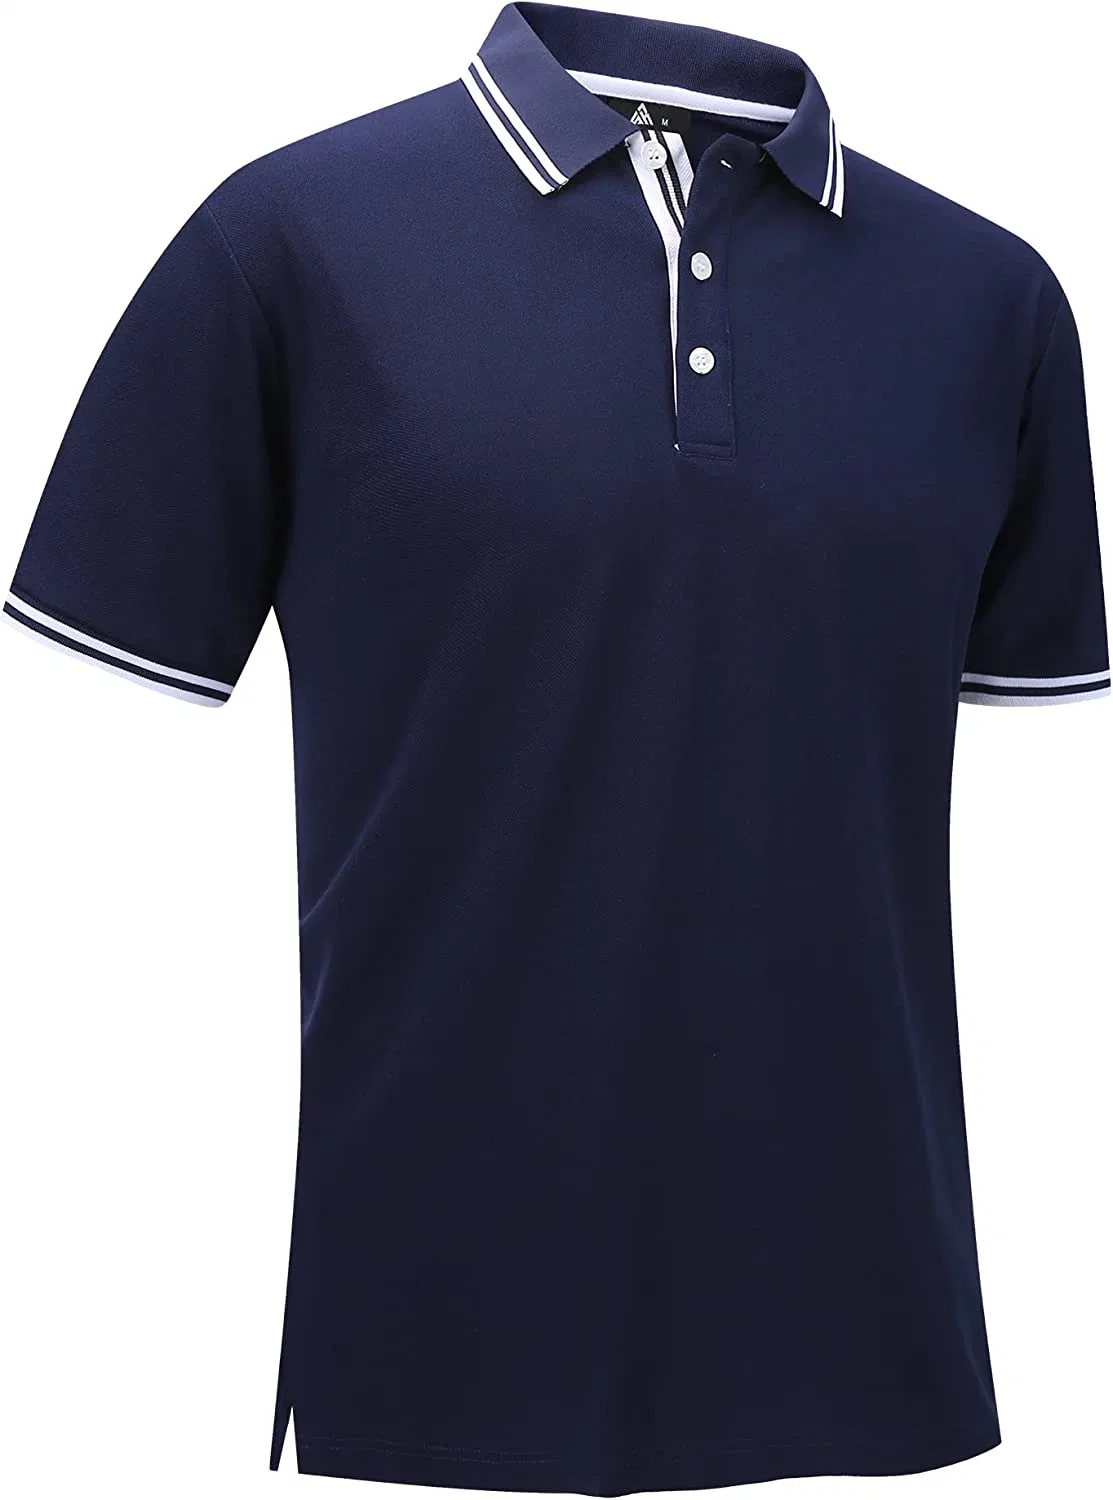 Polo de golf para hombre manga corta que absorbe la humedad Verano Casual Camisas con cuello Camisas de tenis